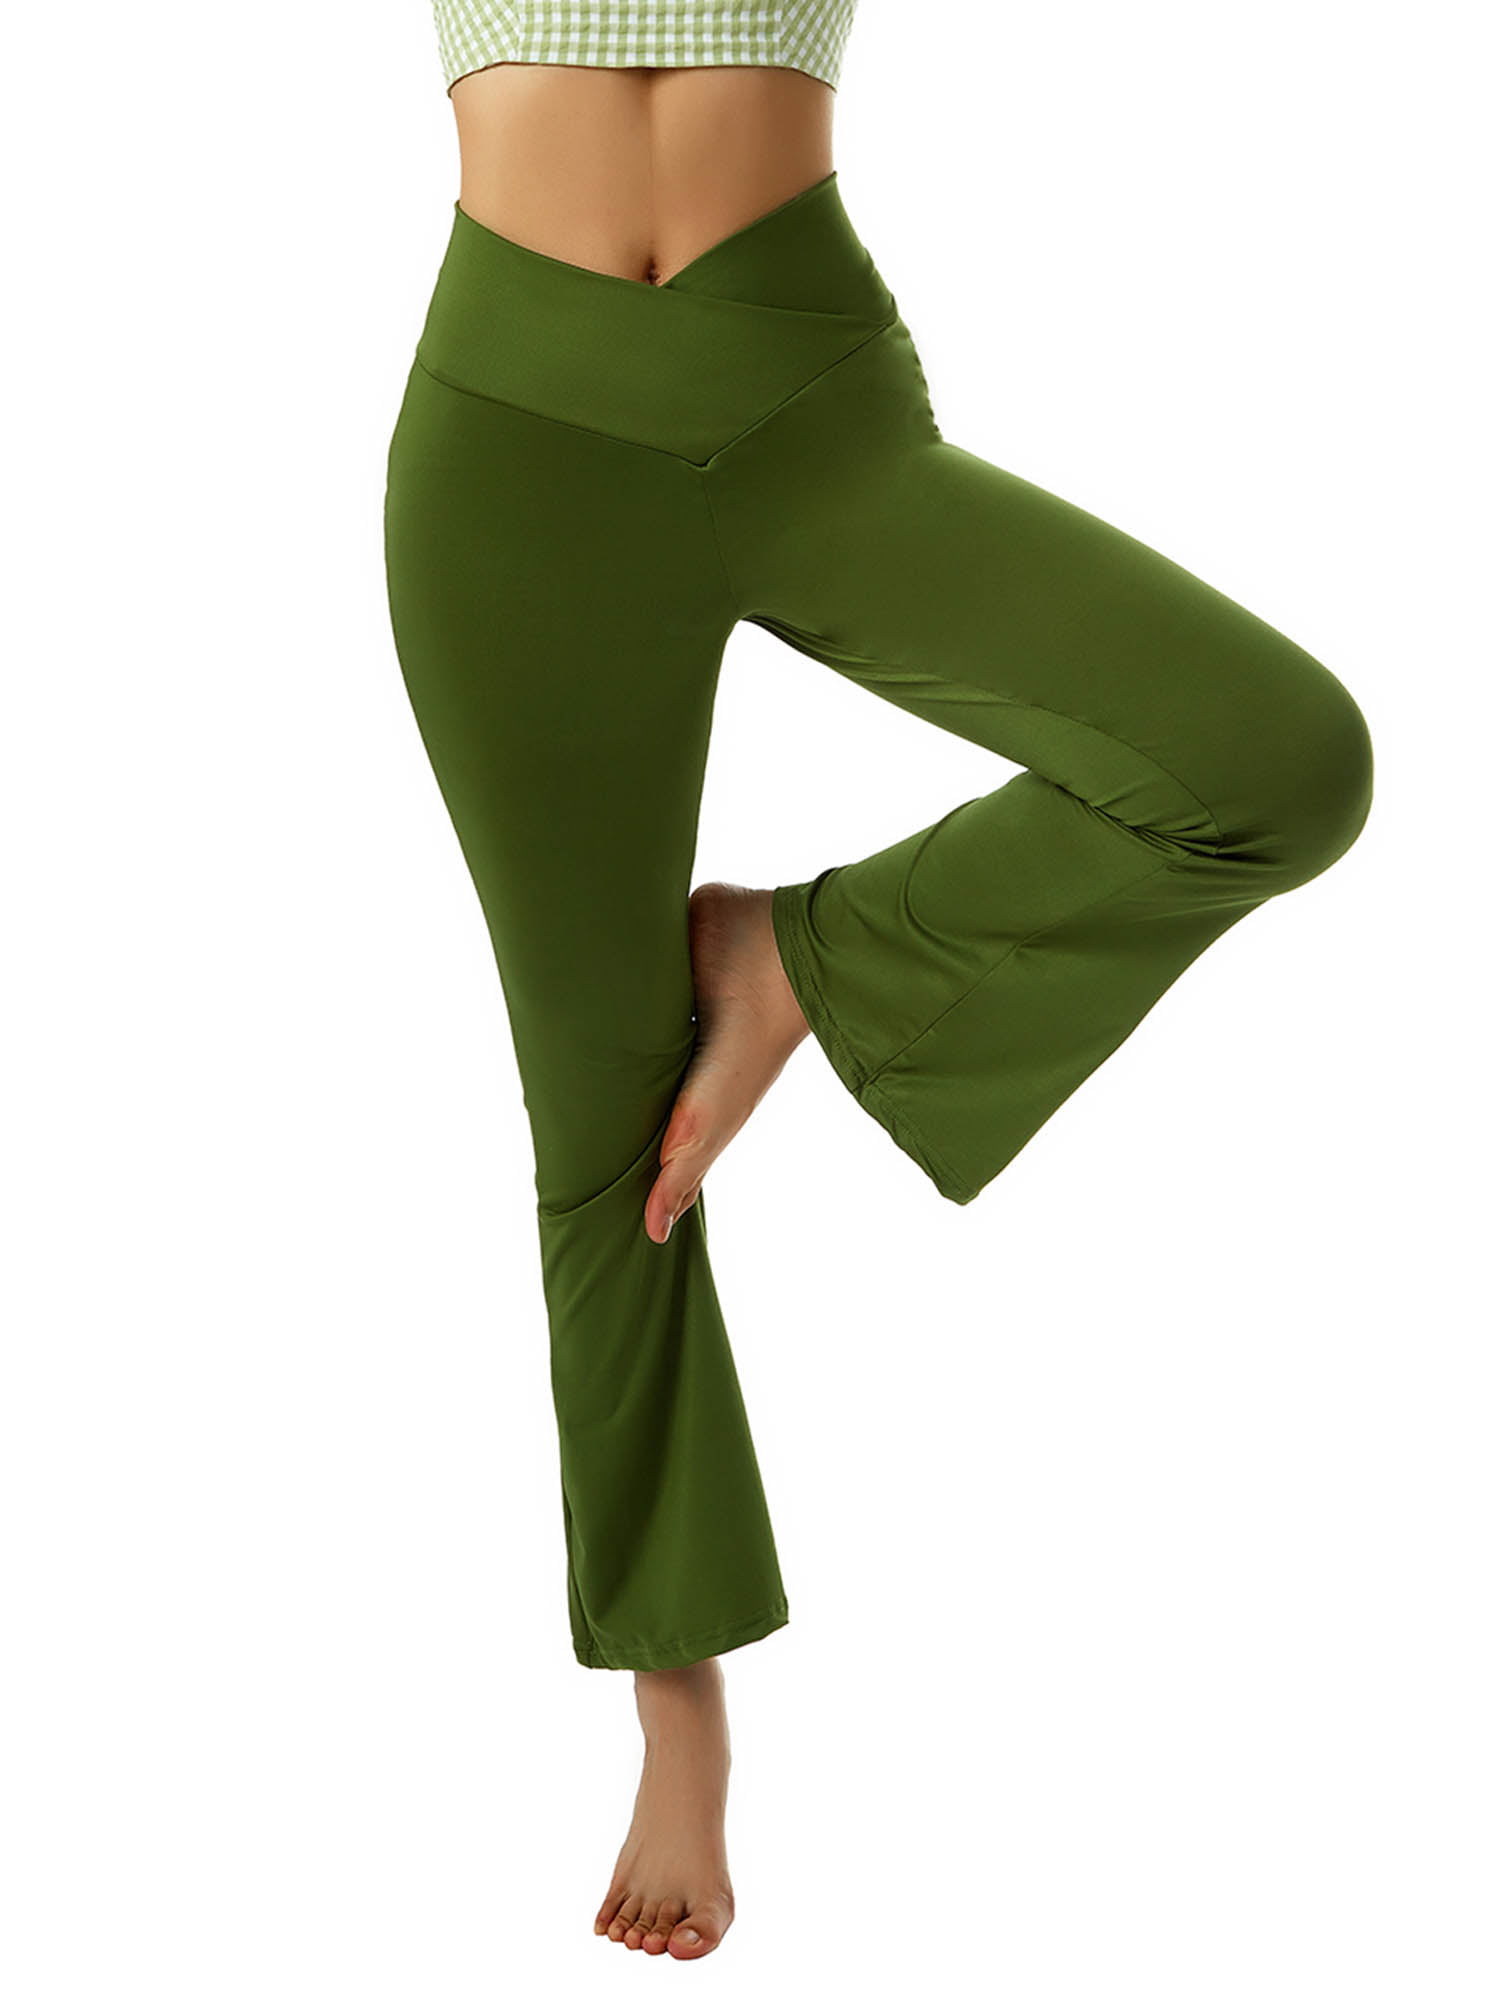 Imcute Women's Yoga Pants Leggings High Waisted Wide Leg Yoga